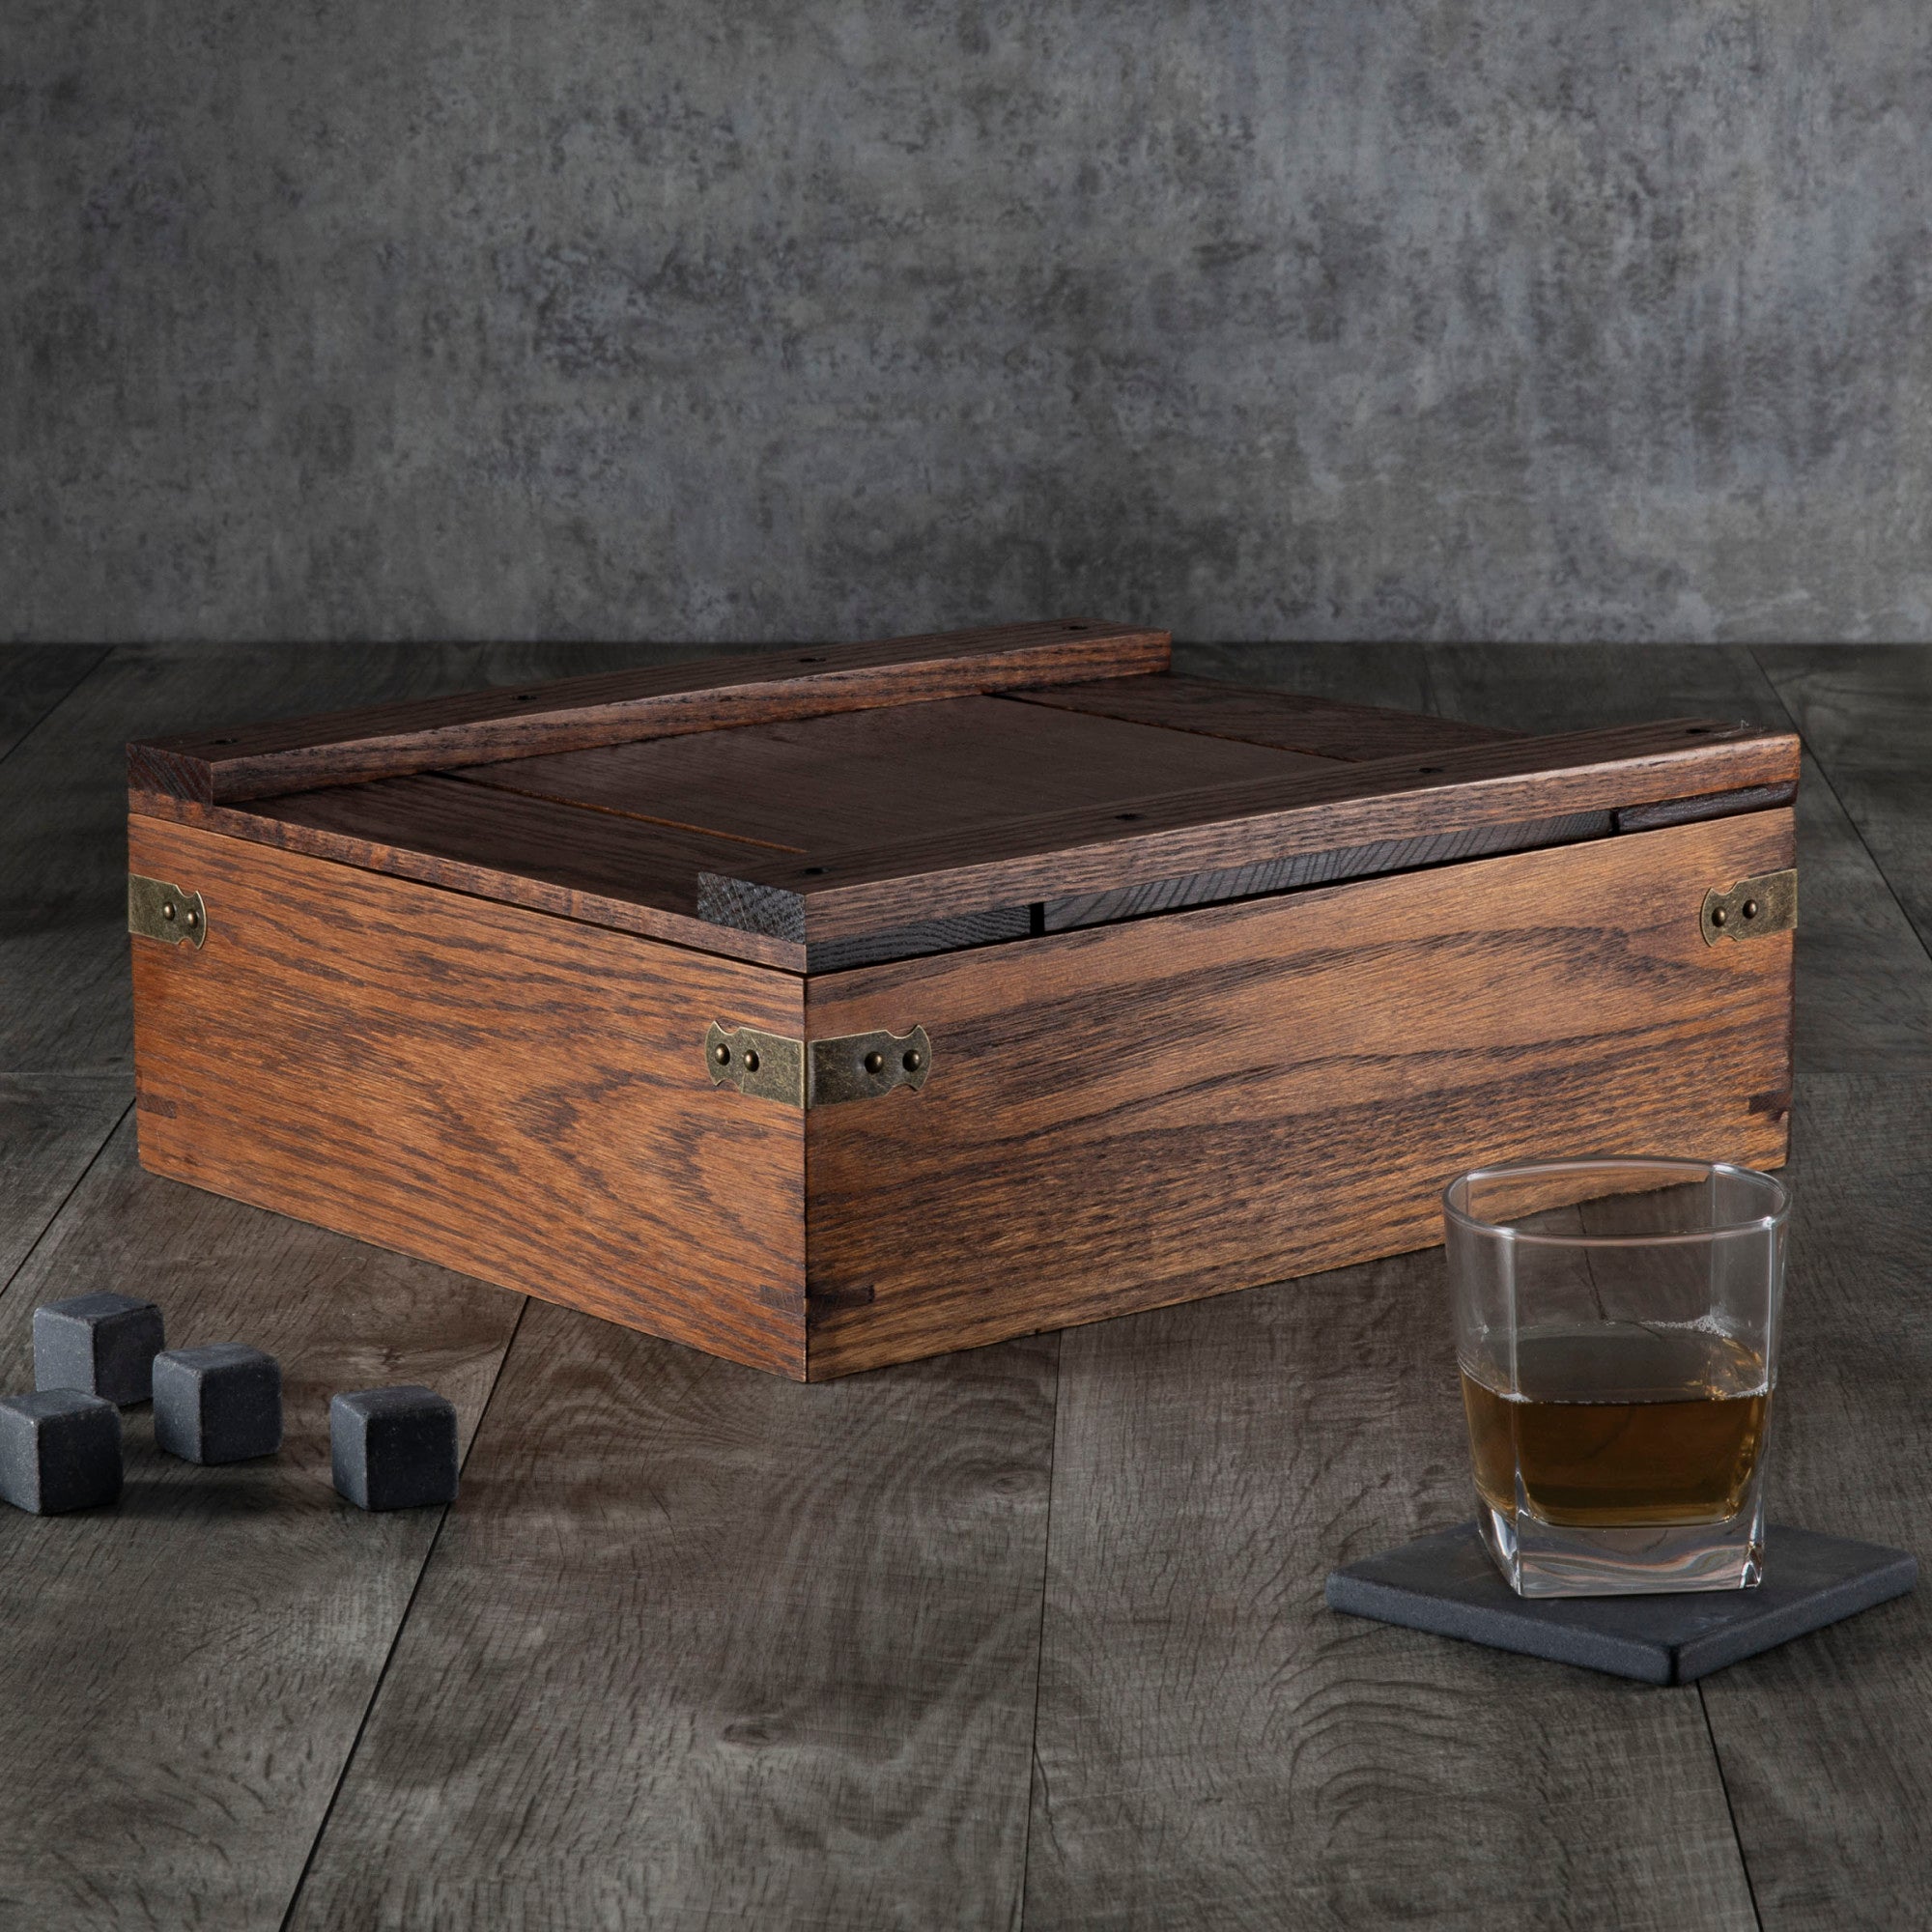 Atlanta Braves - Whiskey Box Gift Set